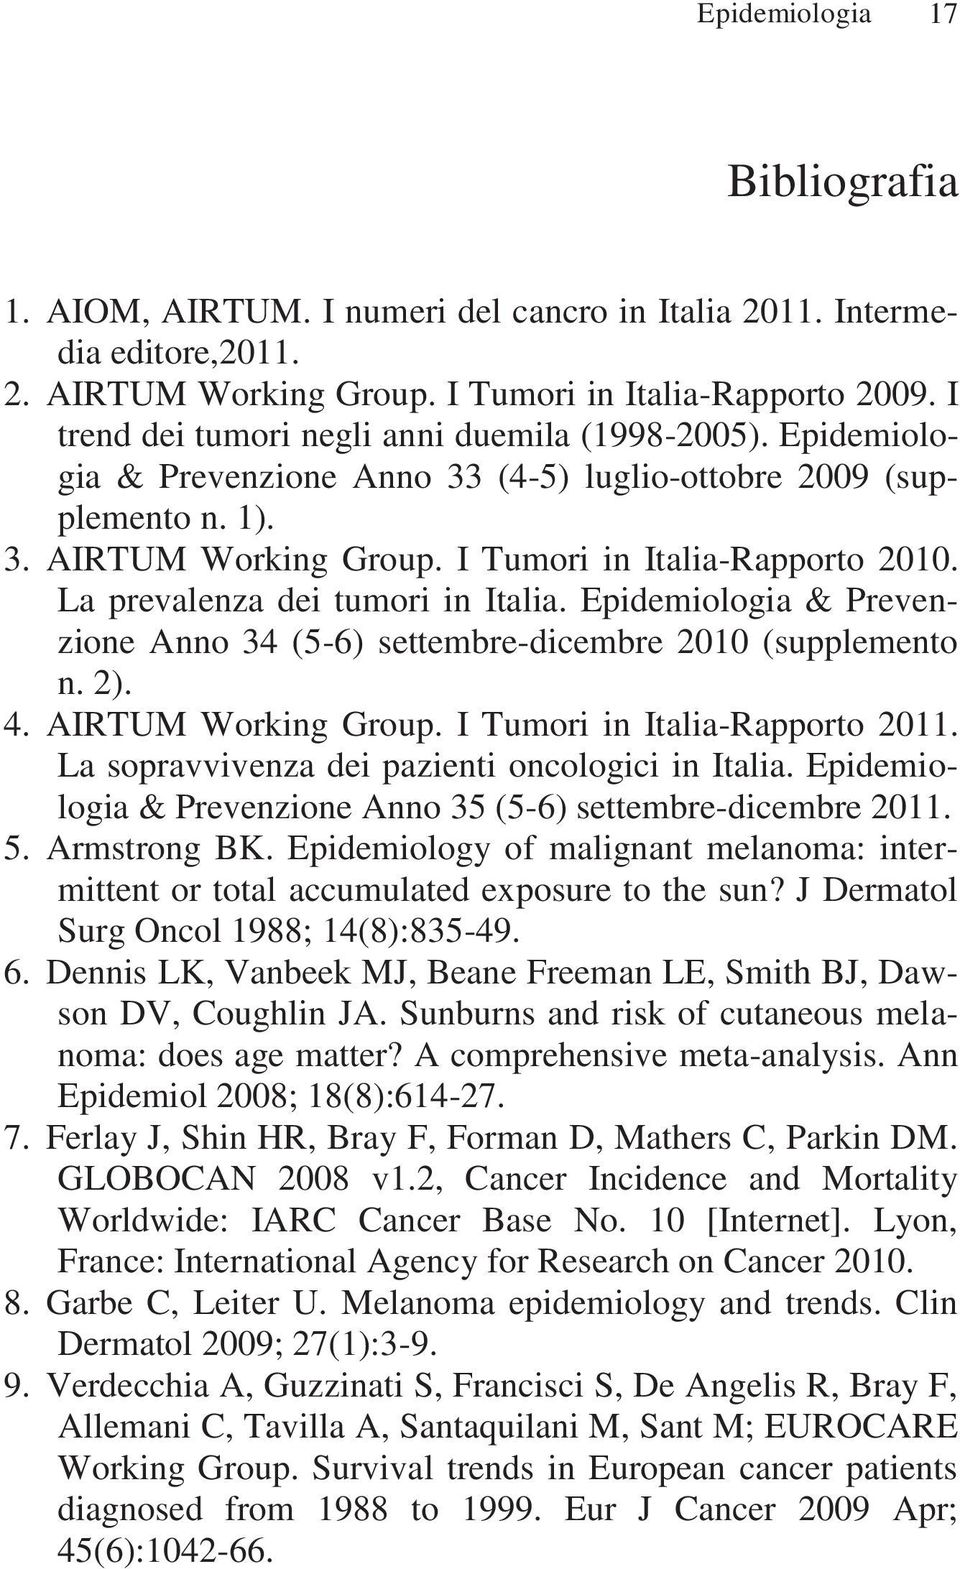 La prevalenza dei tumori in Italia. Epidemiologia & Prevenzione Anno 34 (5-6) settembre-dicembre 2010 (supplemento n. 2). 4. AIRTUM Working Group. I Tumori in Italia-Rapporto 2011.